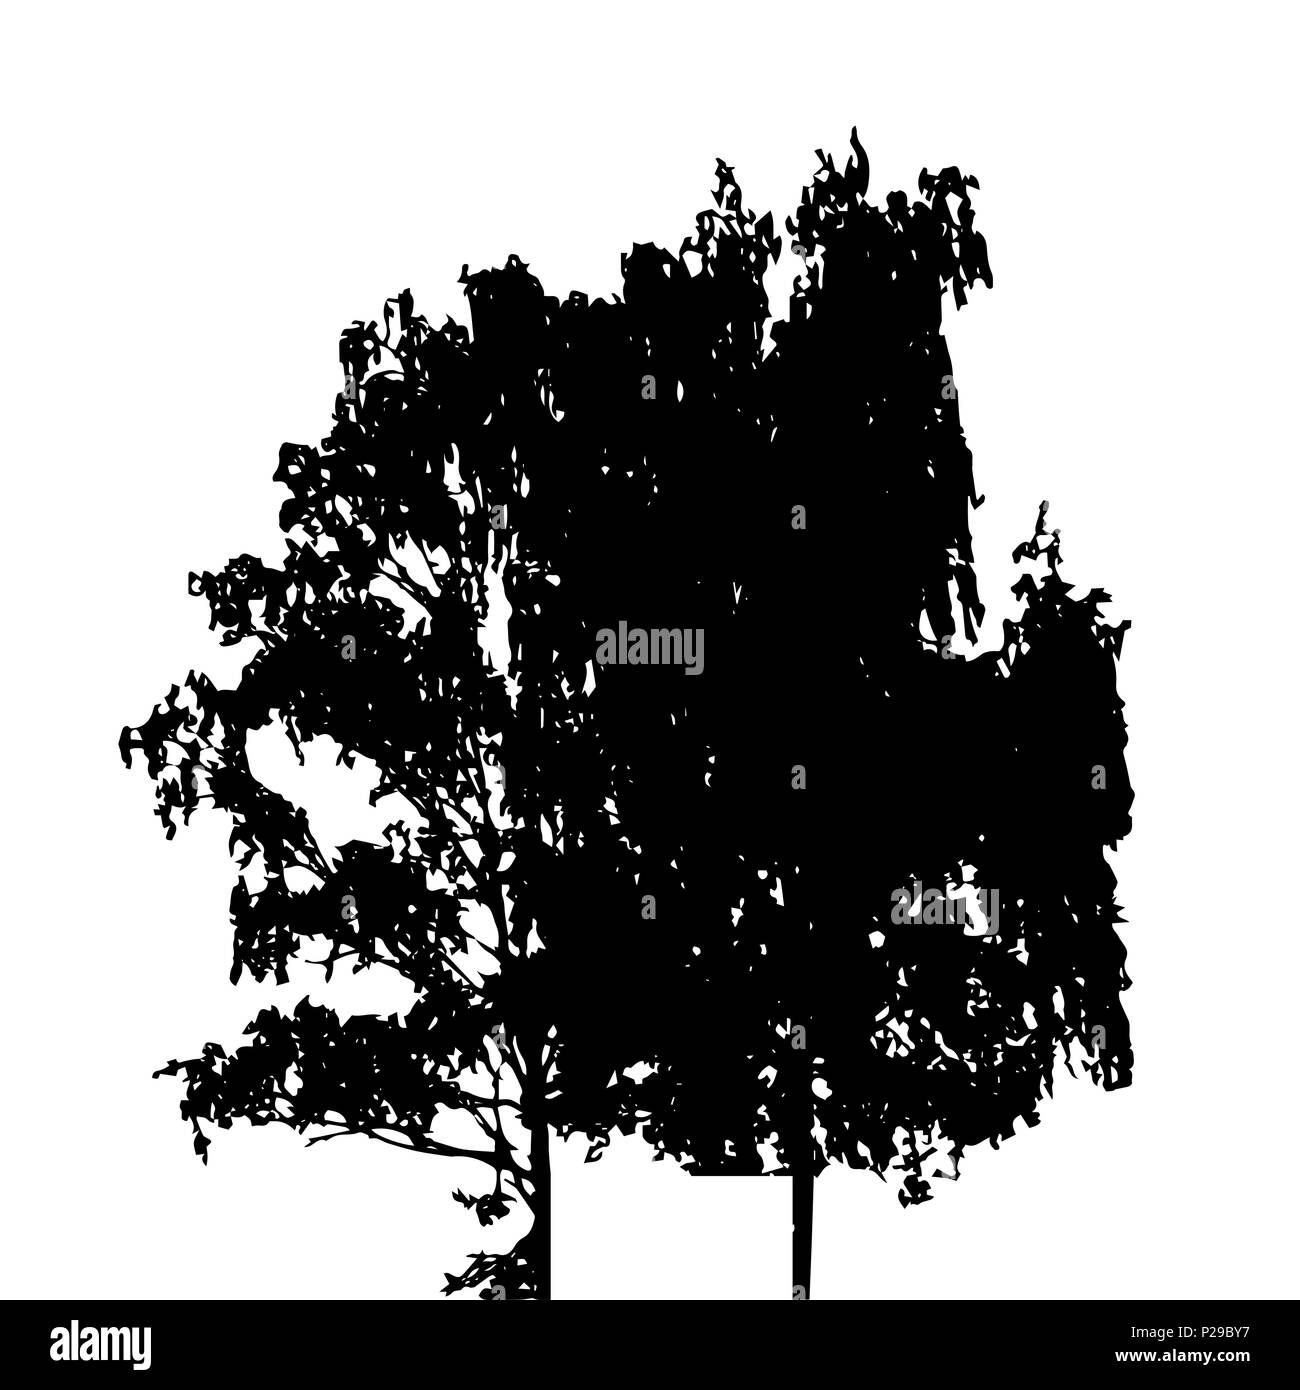 Baum-Silhouette isoliert auf weißem Migrationshintergrund. Vecrtor Illustration Stock Vektor